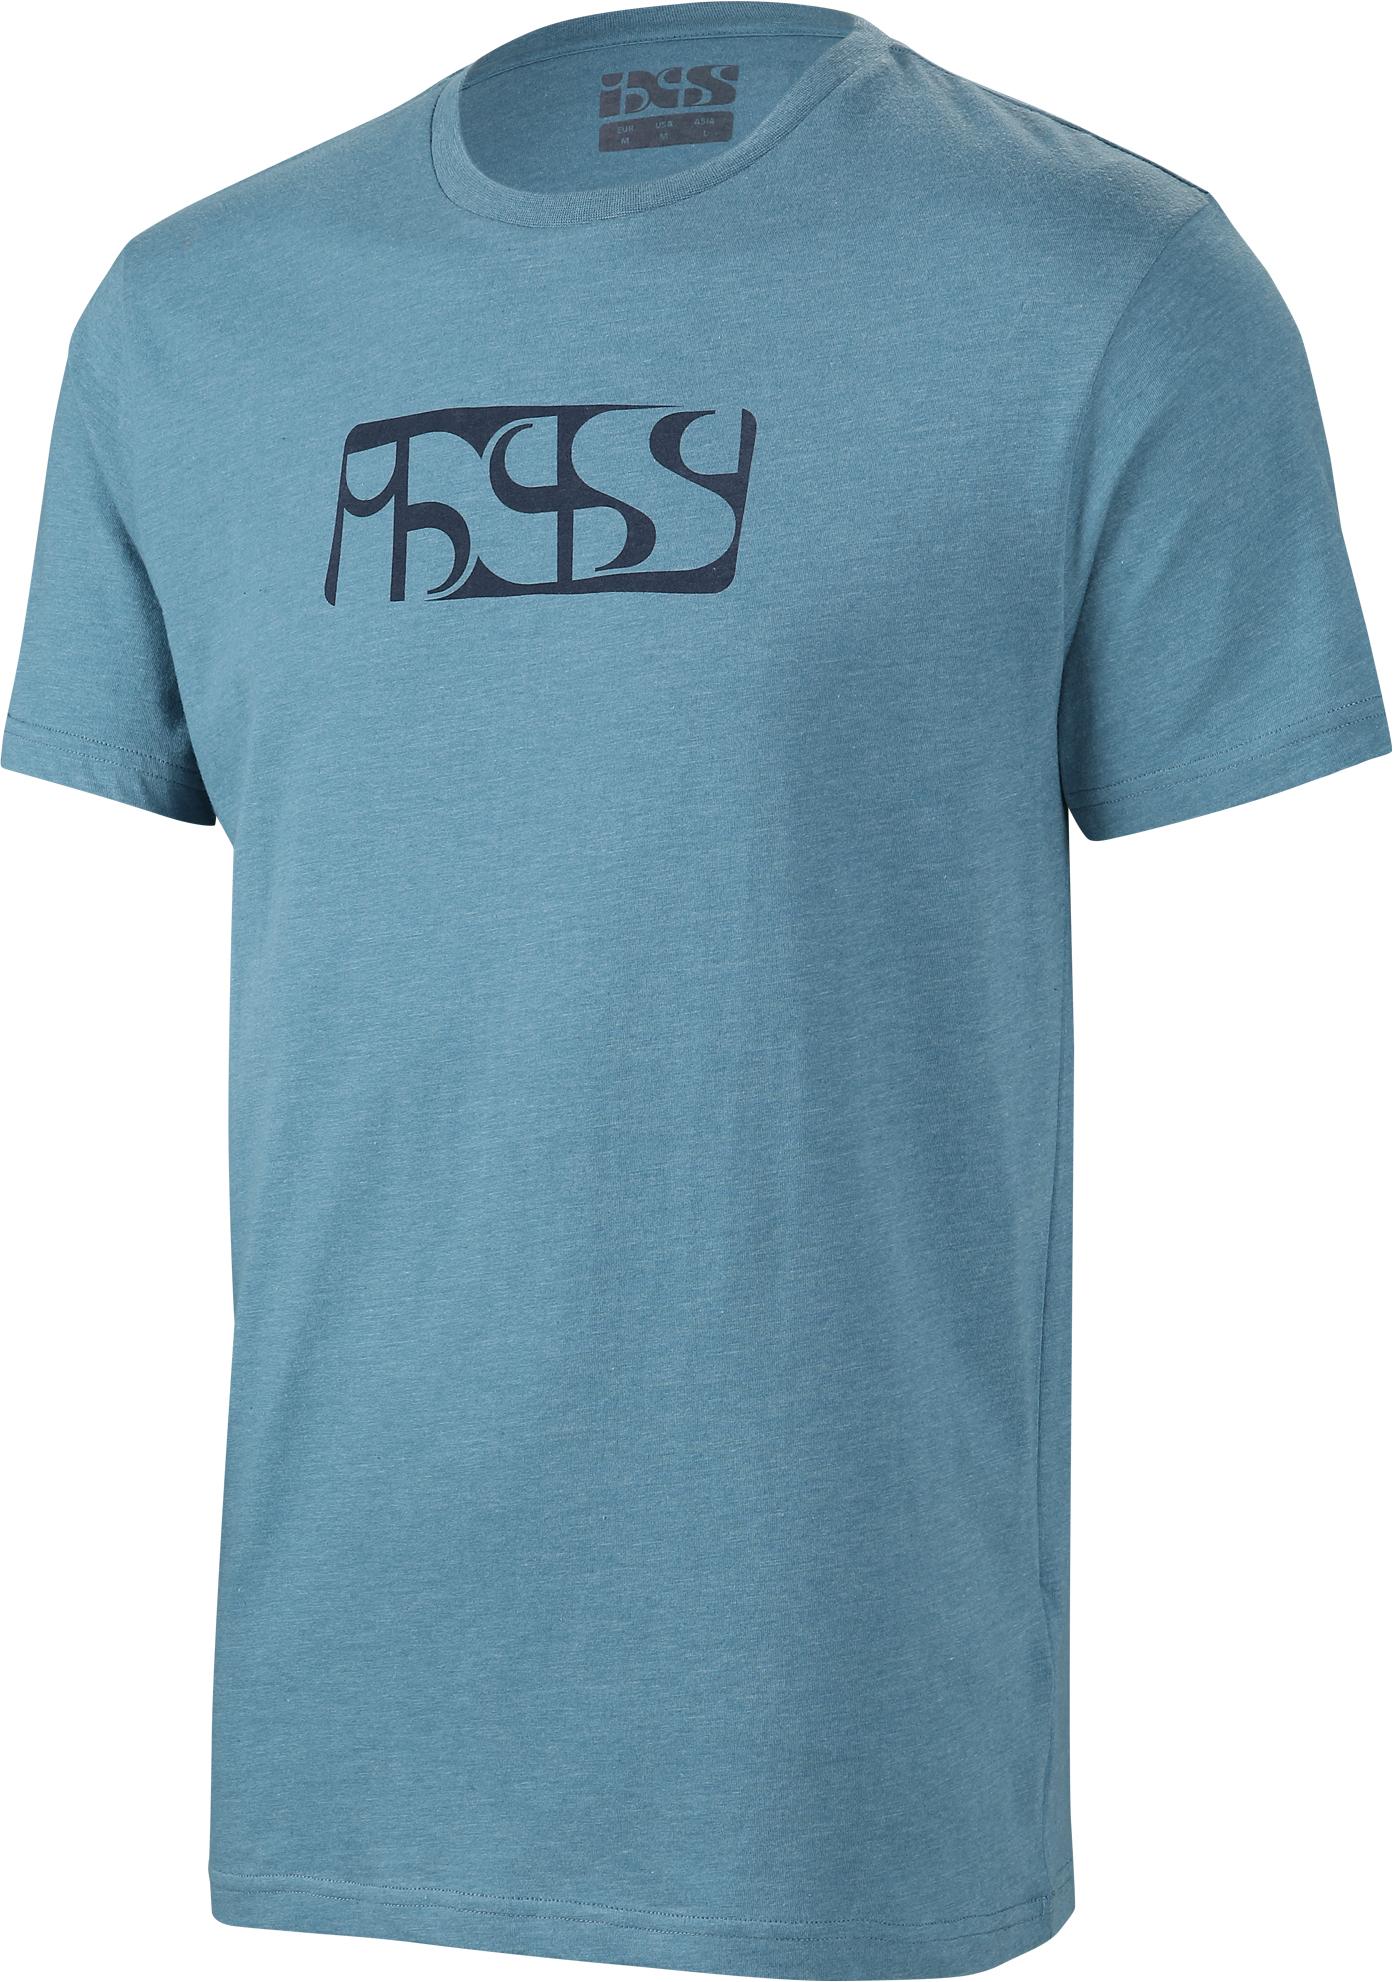 Ixs Brand 6.1 T-shirt - Ocean